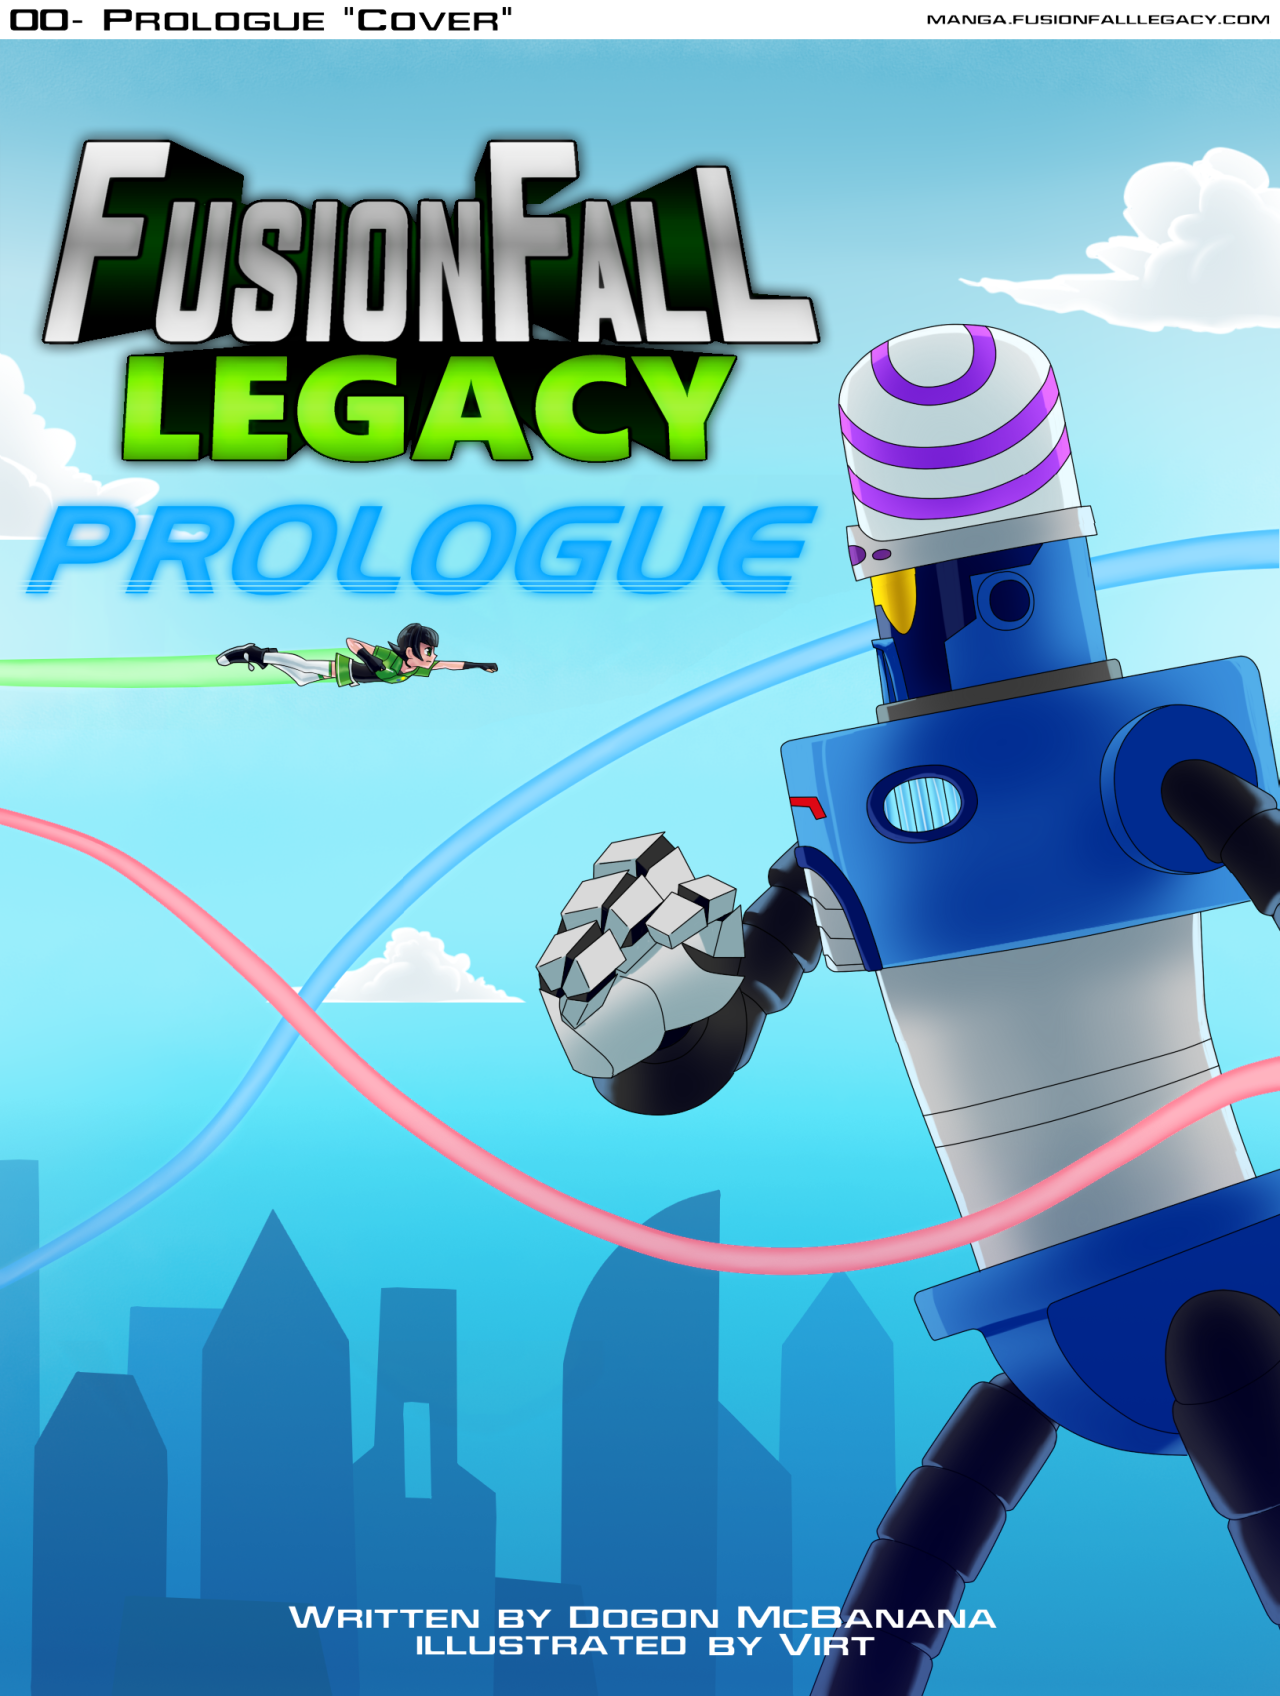 fusionfall legacy modnet account